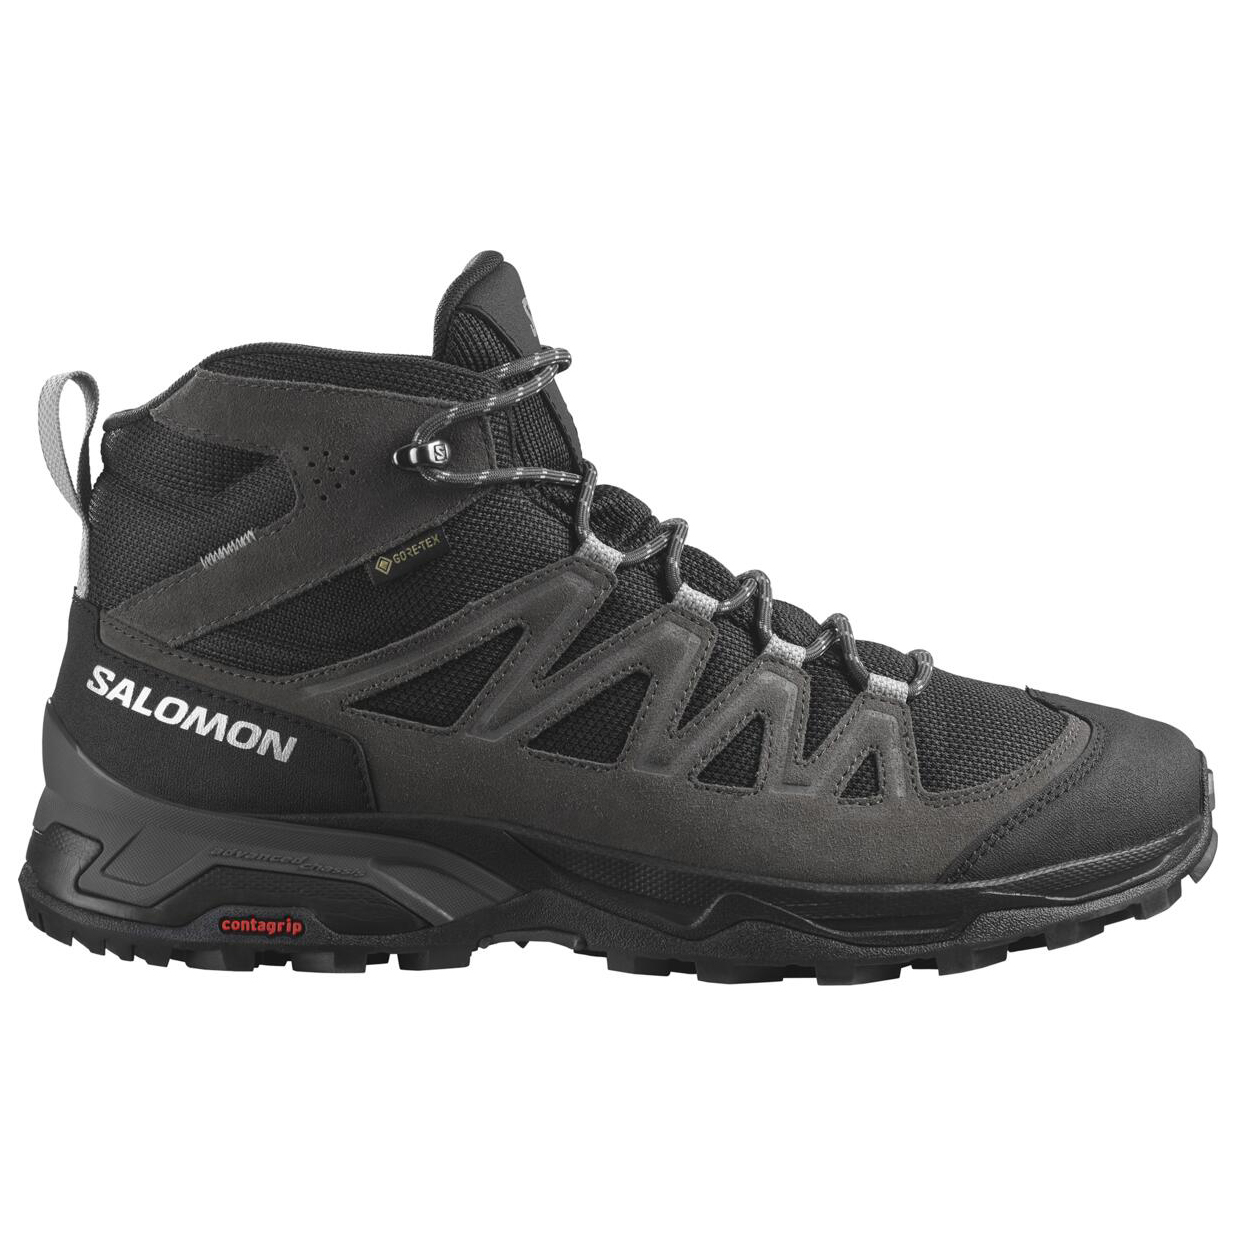 Ботинки для прогулки Salomon X Ward Leather Mid GTX, цвет Phantom/Black/Magnet ботинки salomon outline gtx w phantom black ma uk 5 5